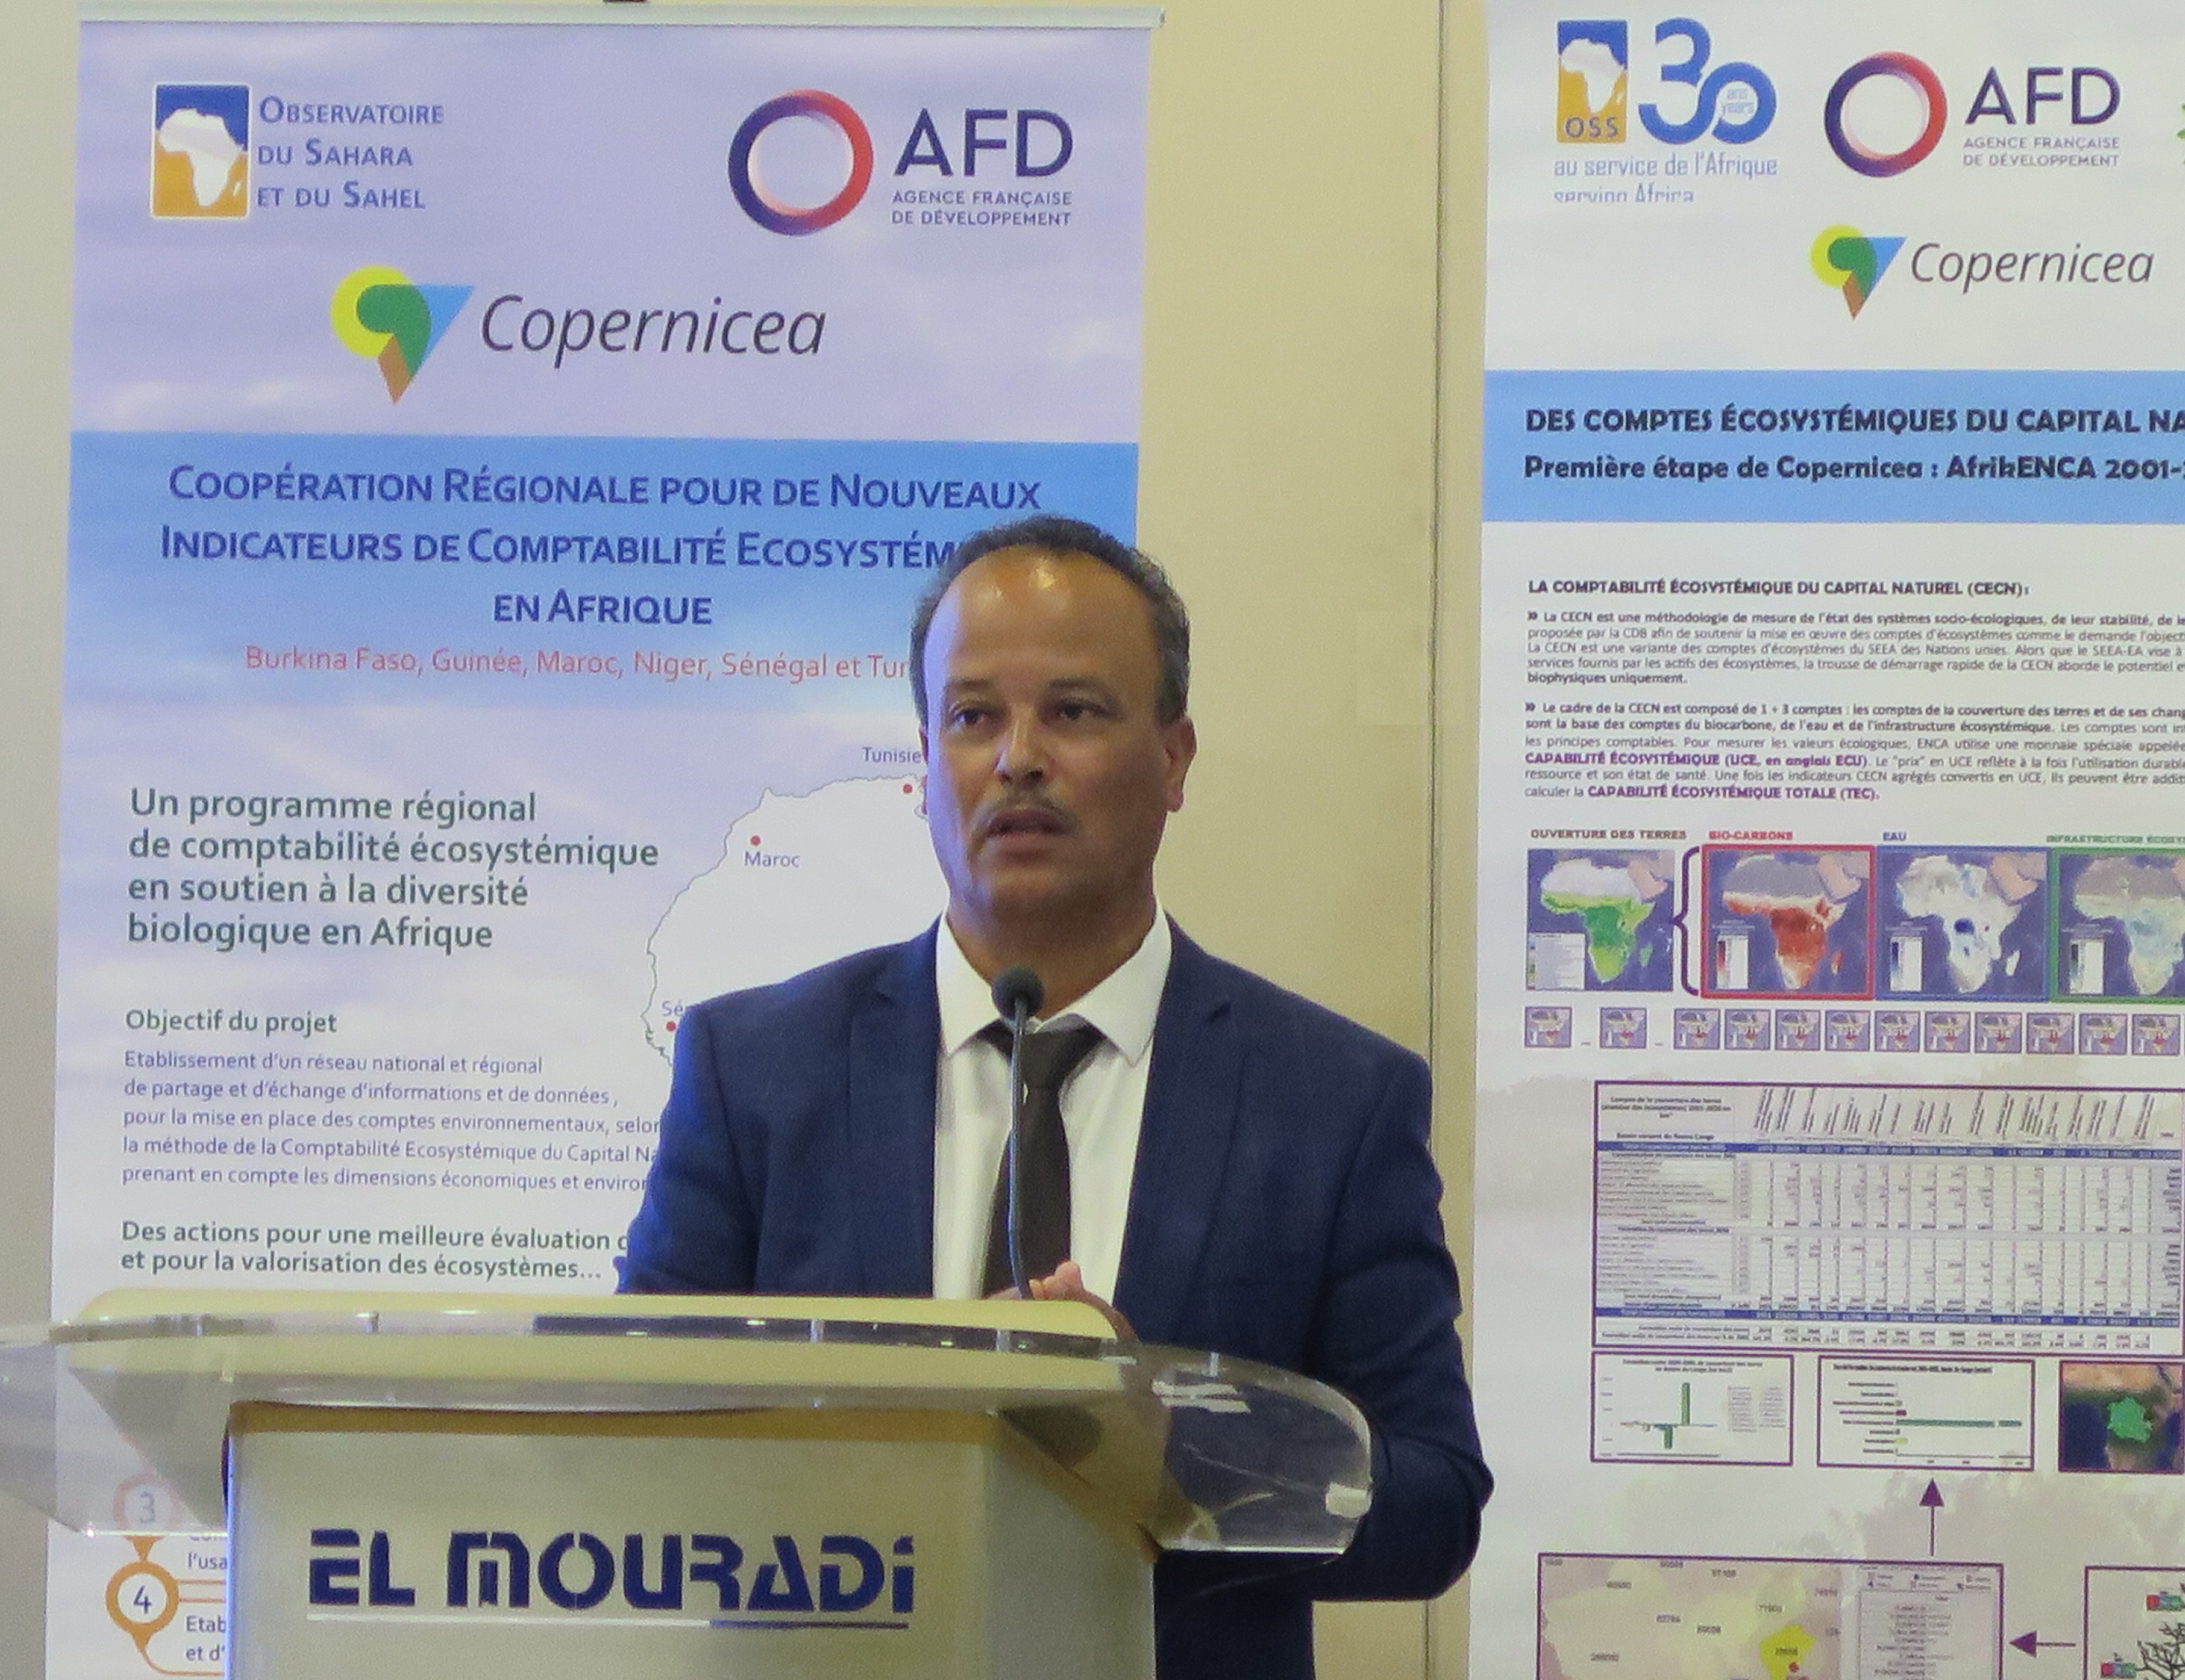  Copernicea : Atelier national d’échange et de validation des données de la Comptabilité Ecosystémique du Capital Naturel, Tunis, 29 juin 2022 